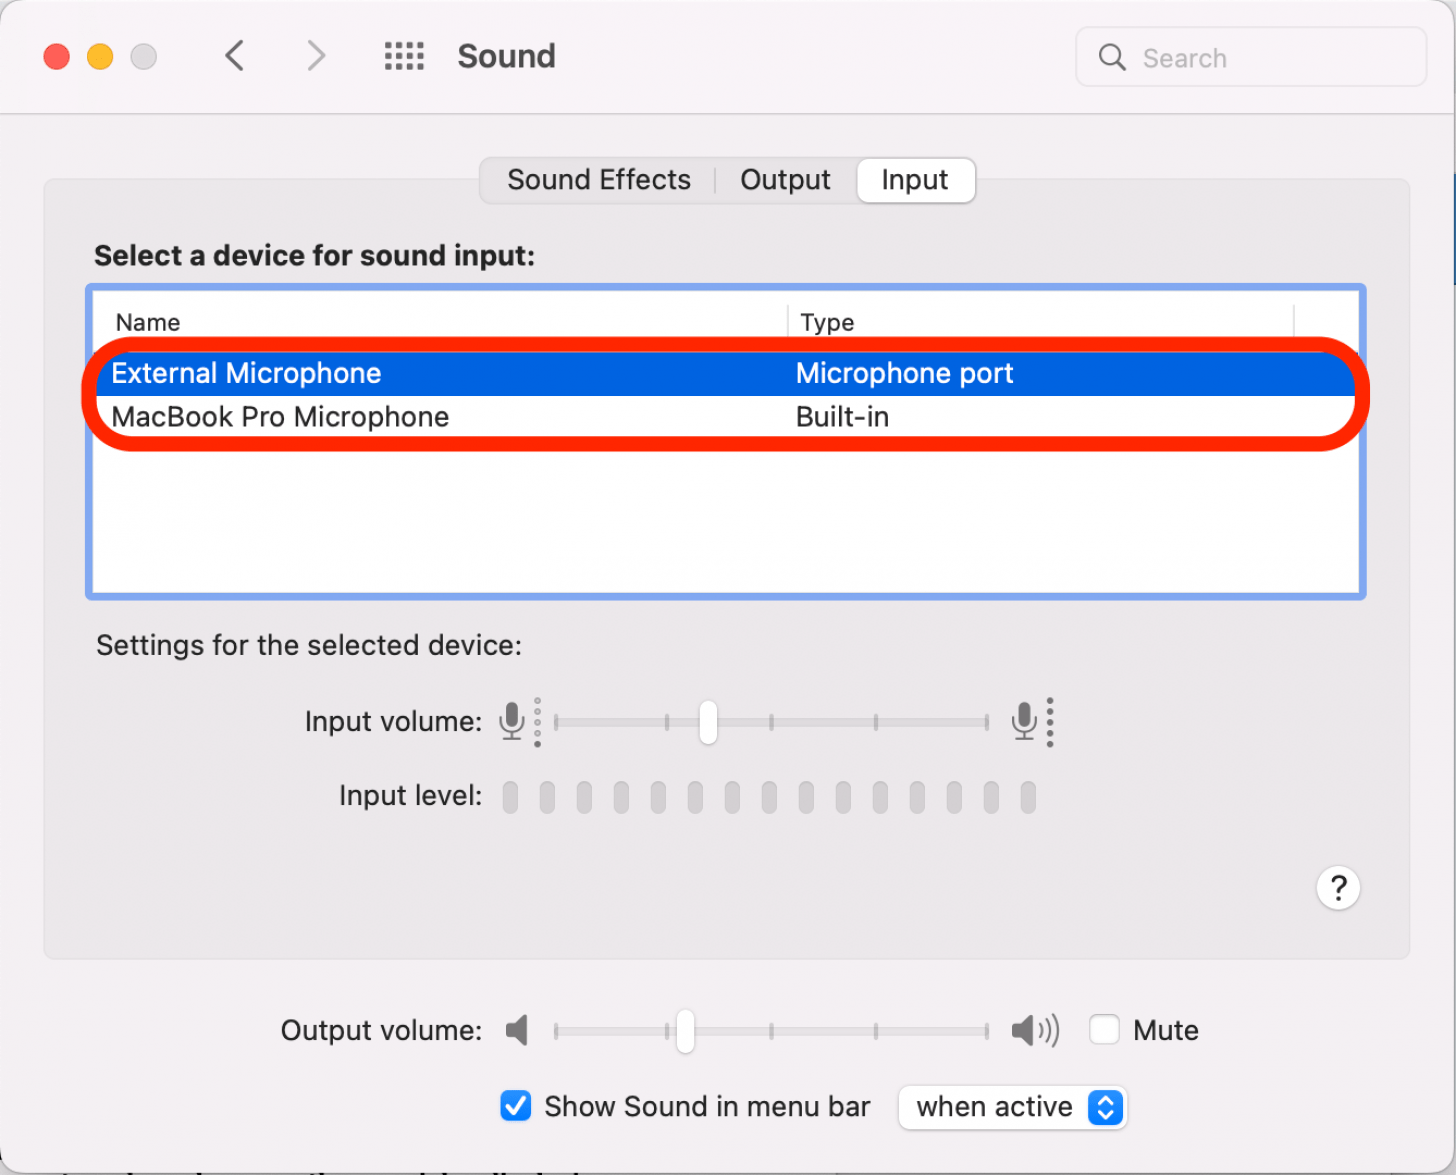 Cliquez pour sélectionner un périphérique pour l'entrée audio.  Les options listeront tous les appareils actuellement disponibles.